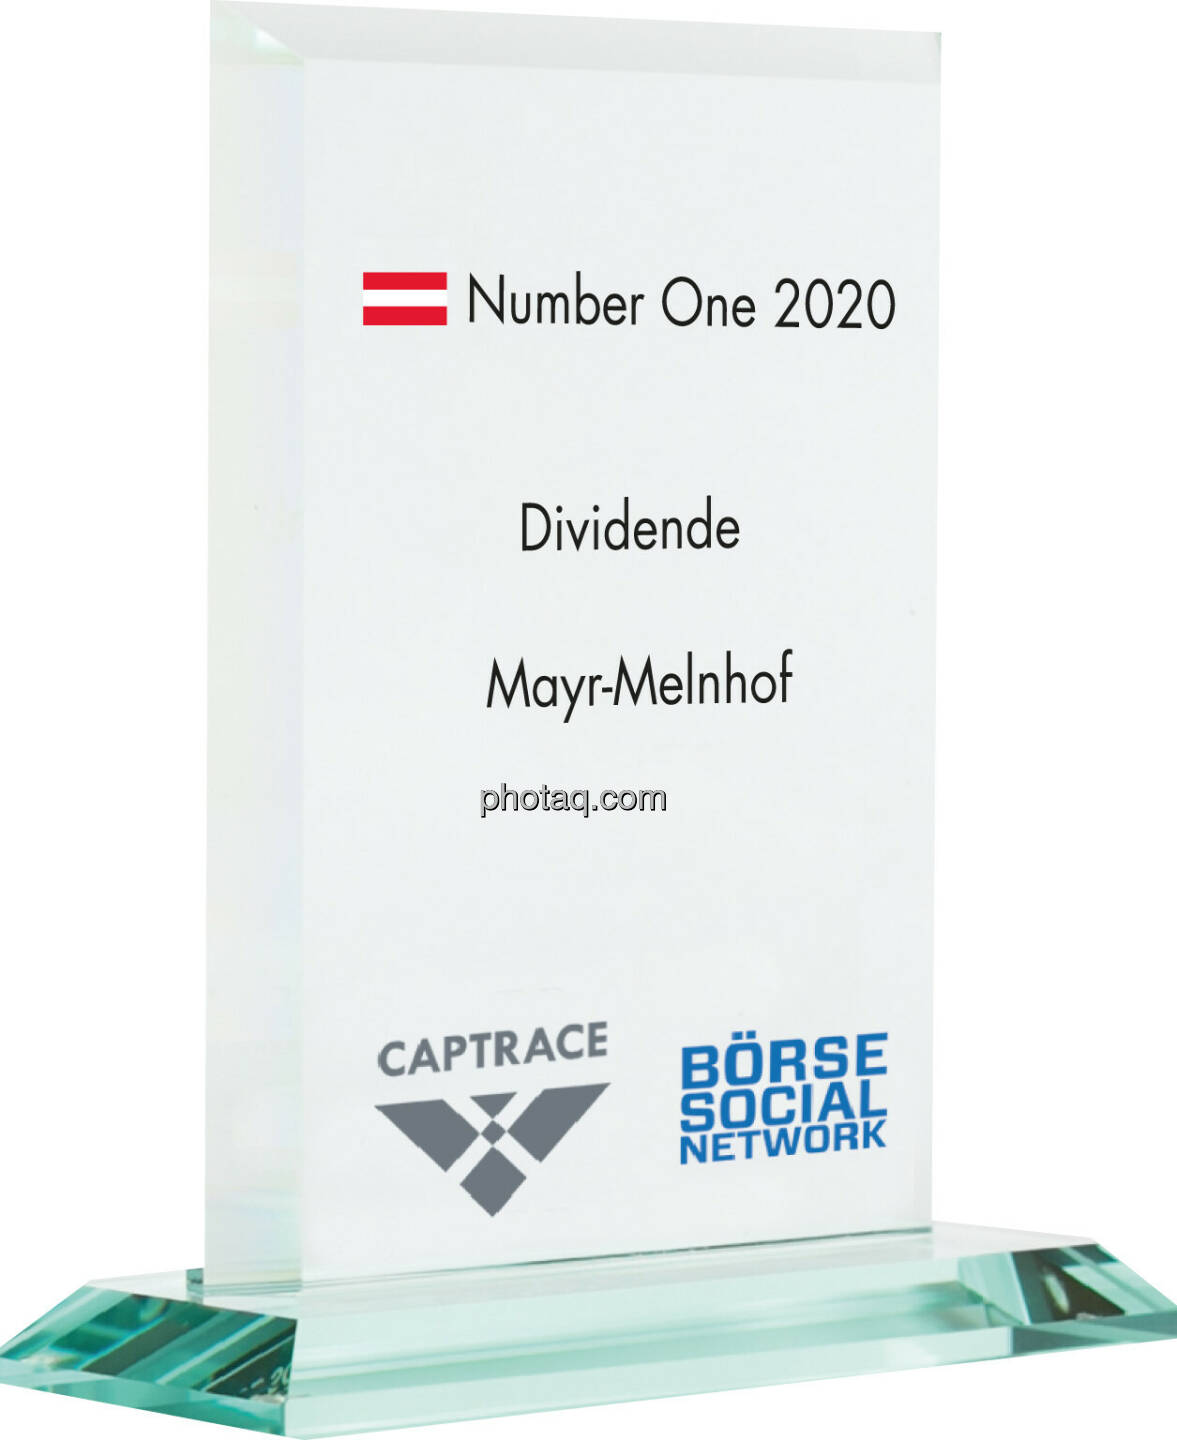 Number One Awards 2020 - Dividenden Mayr-Melnhof